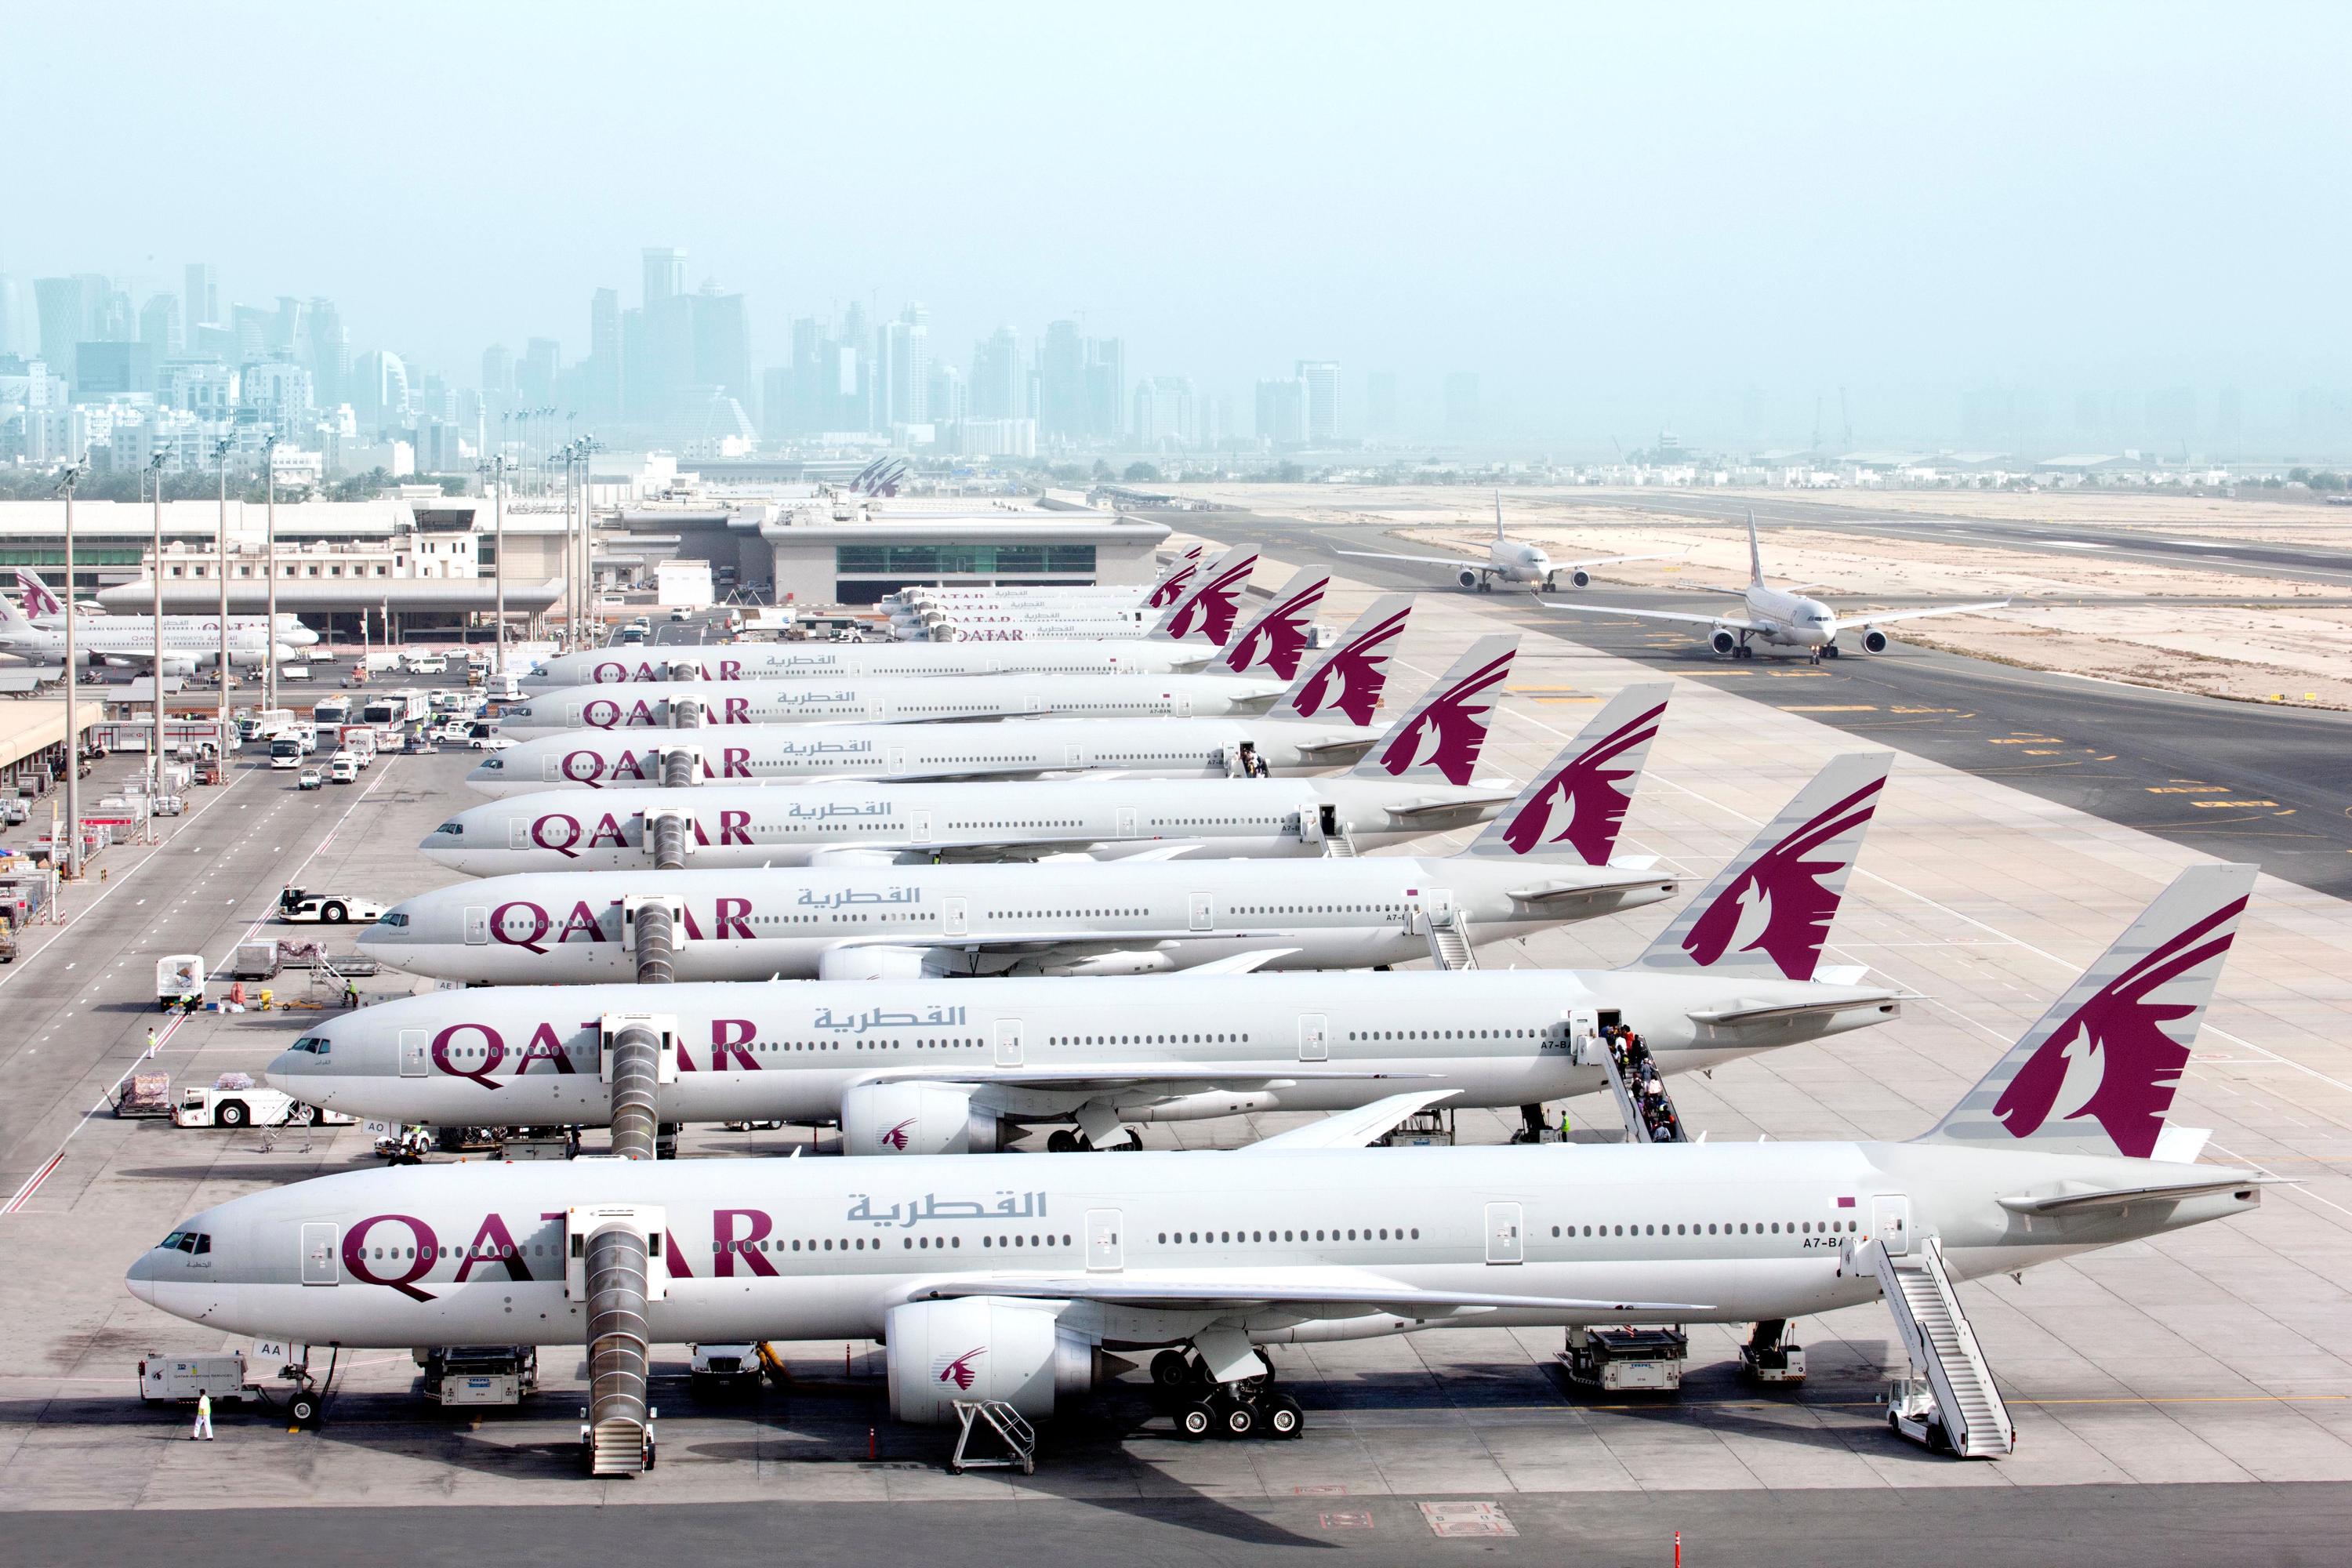 Катар купить авиабилет. Самолет Катар. Авиакомпания Qatar Airways самолеты. Доха Катар авиакомпания. Самолет Катар Эйрвейз.